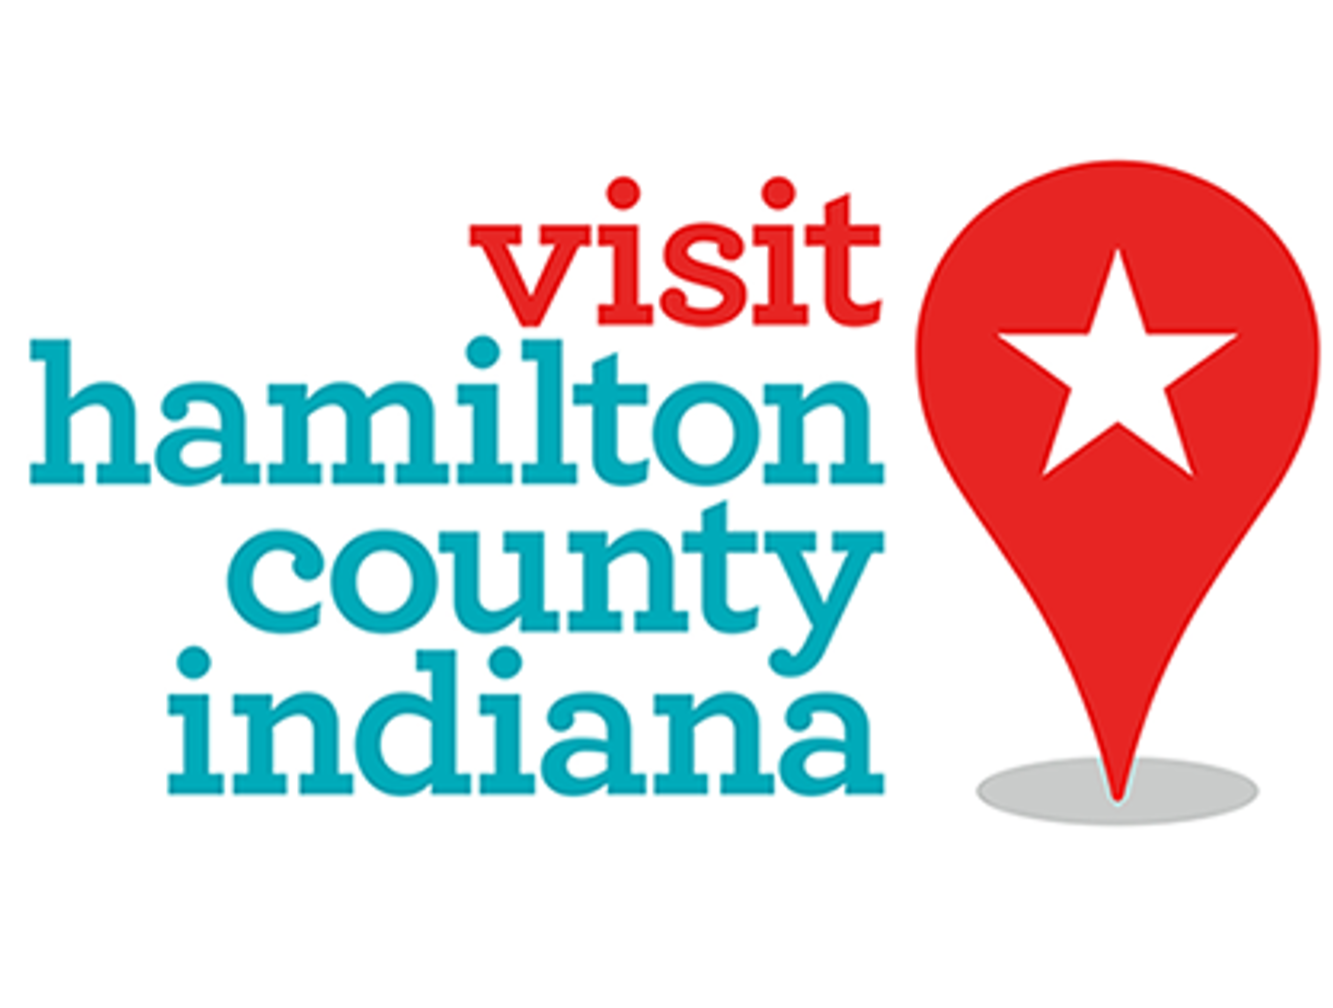 Visit Hamilton County Indiana